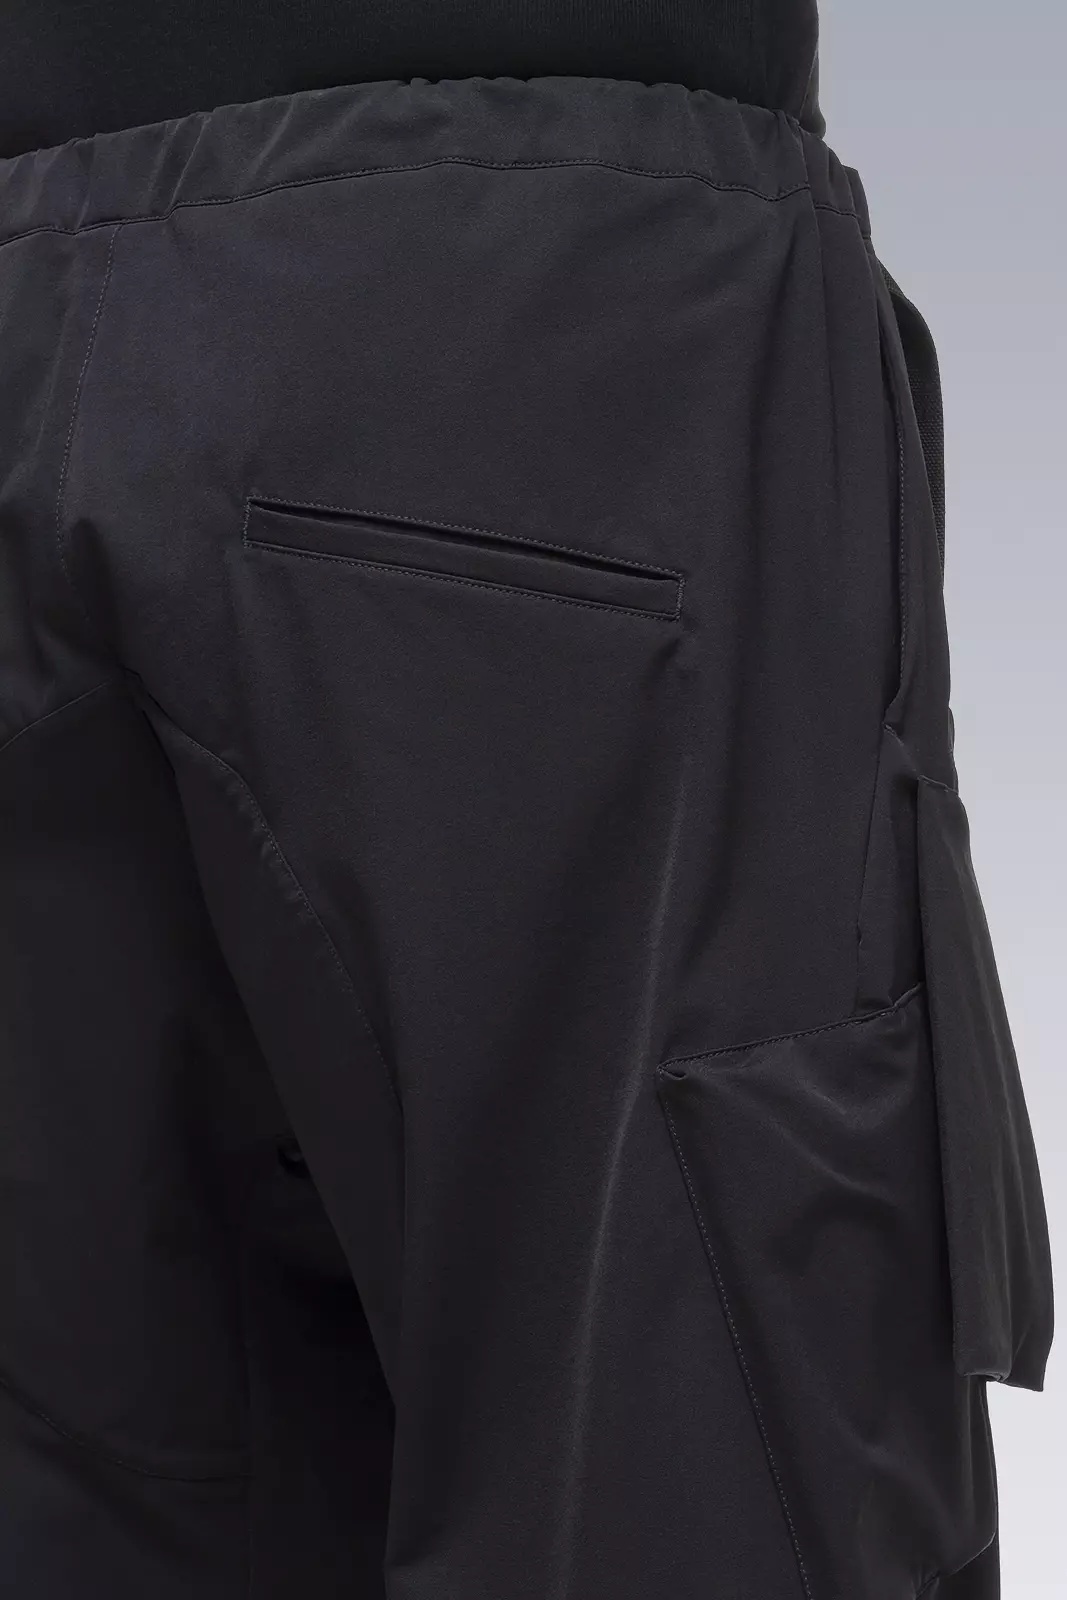 ACRONYM P23A-DS schoeller® Dryskin™ Cargo Pant BLACK | REVERSIBLE